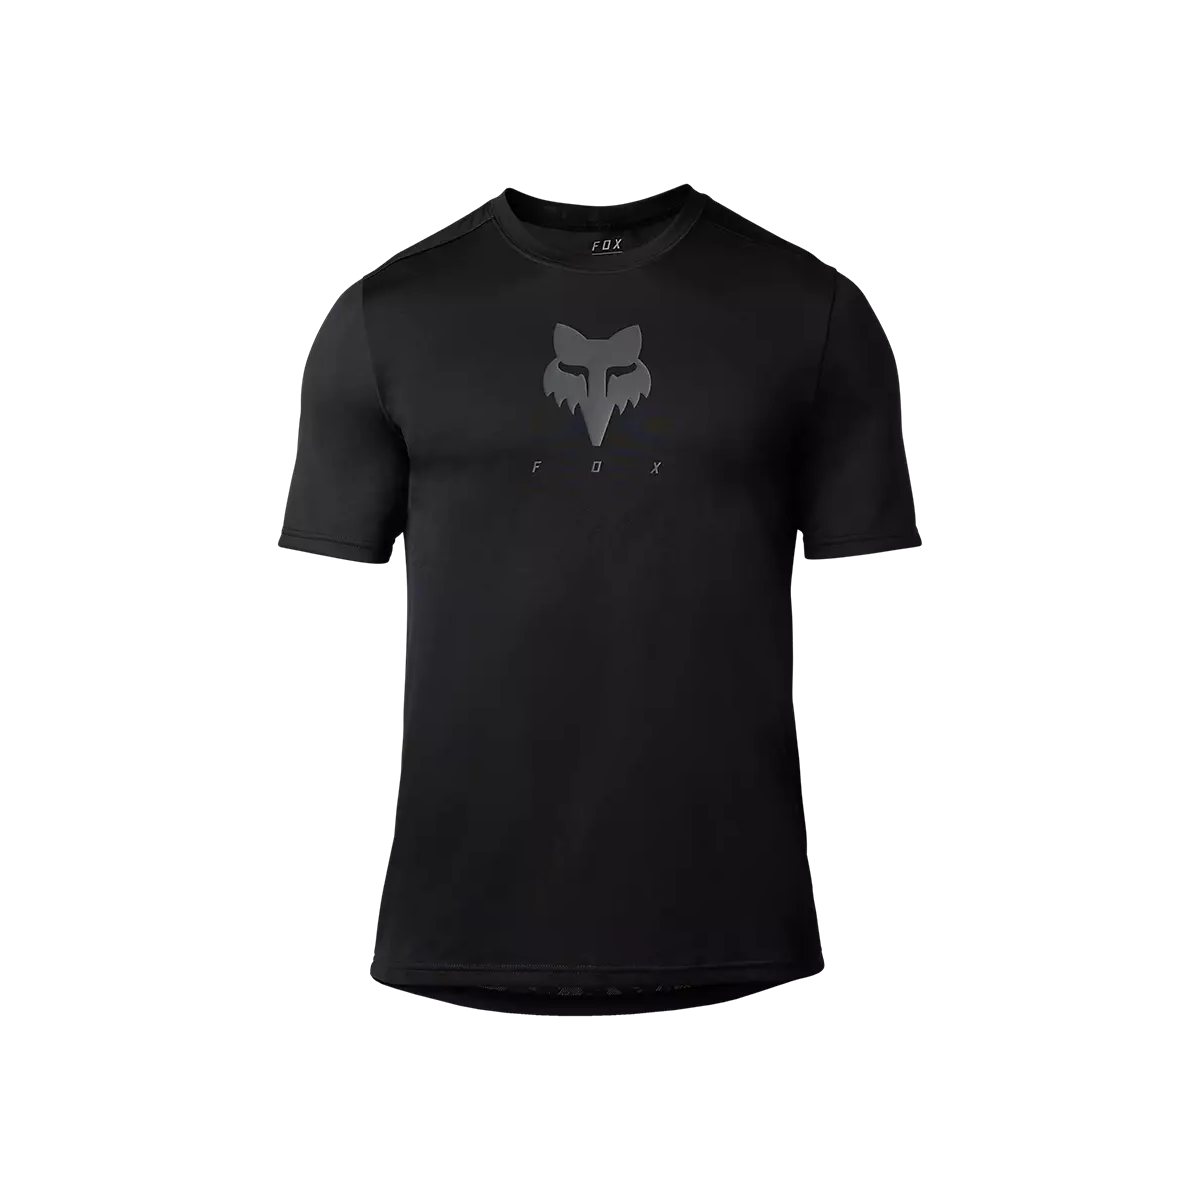 Camiseta técnica de manga corta Fox Ranger Trudri en color negro con el nuevo logo fox en gris 30909-001